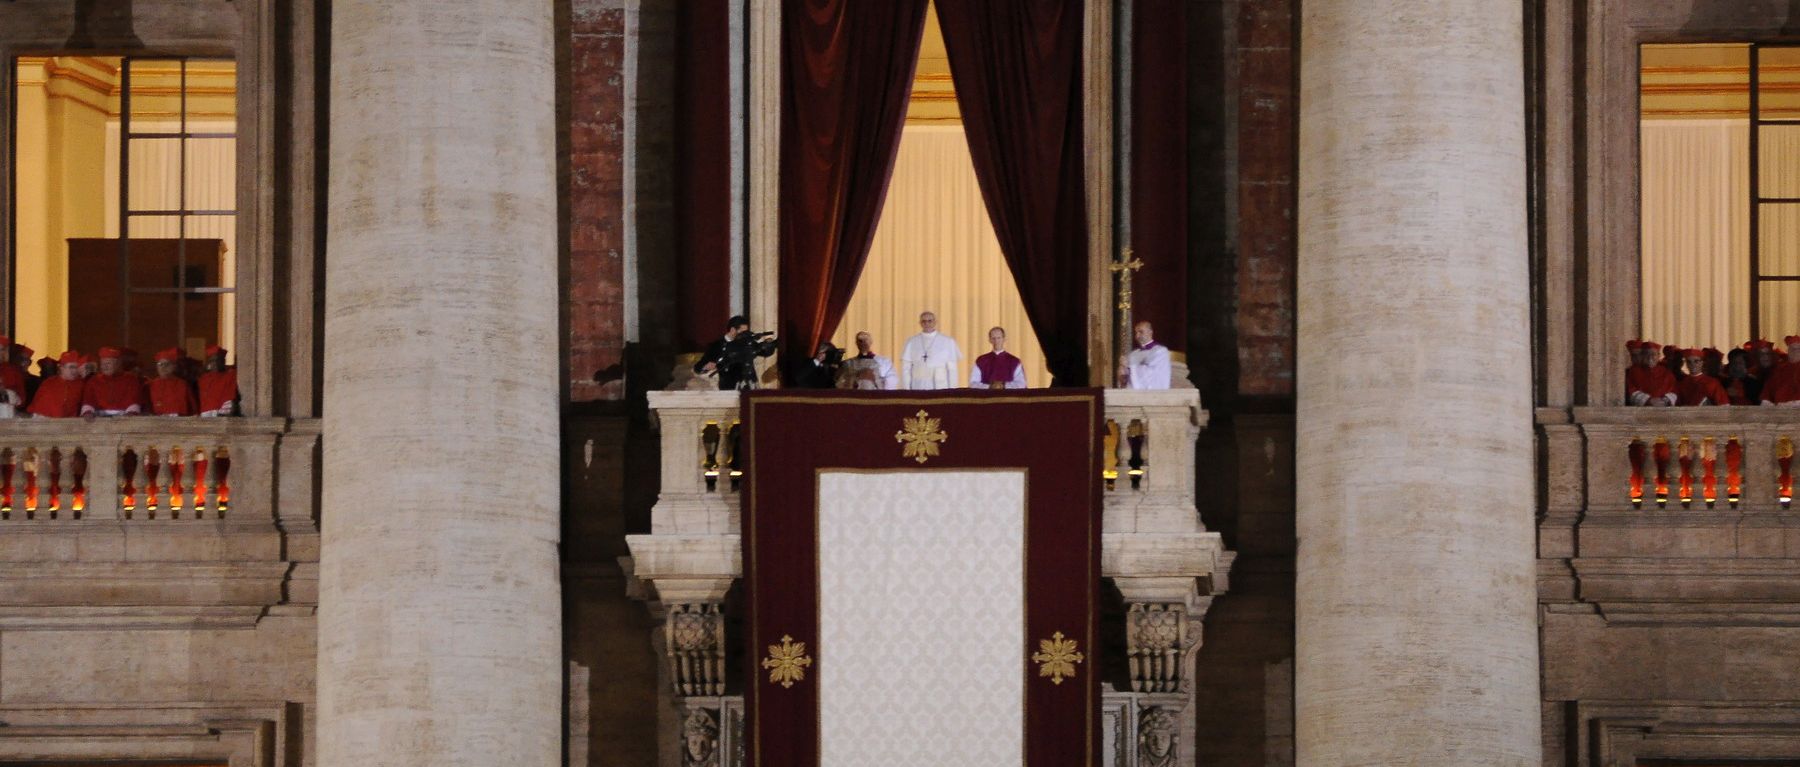 El papa Francisco, recién elegido, se asoma para saludar a la gente presente en la plaza de San Pedro.